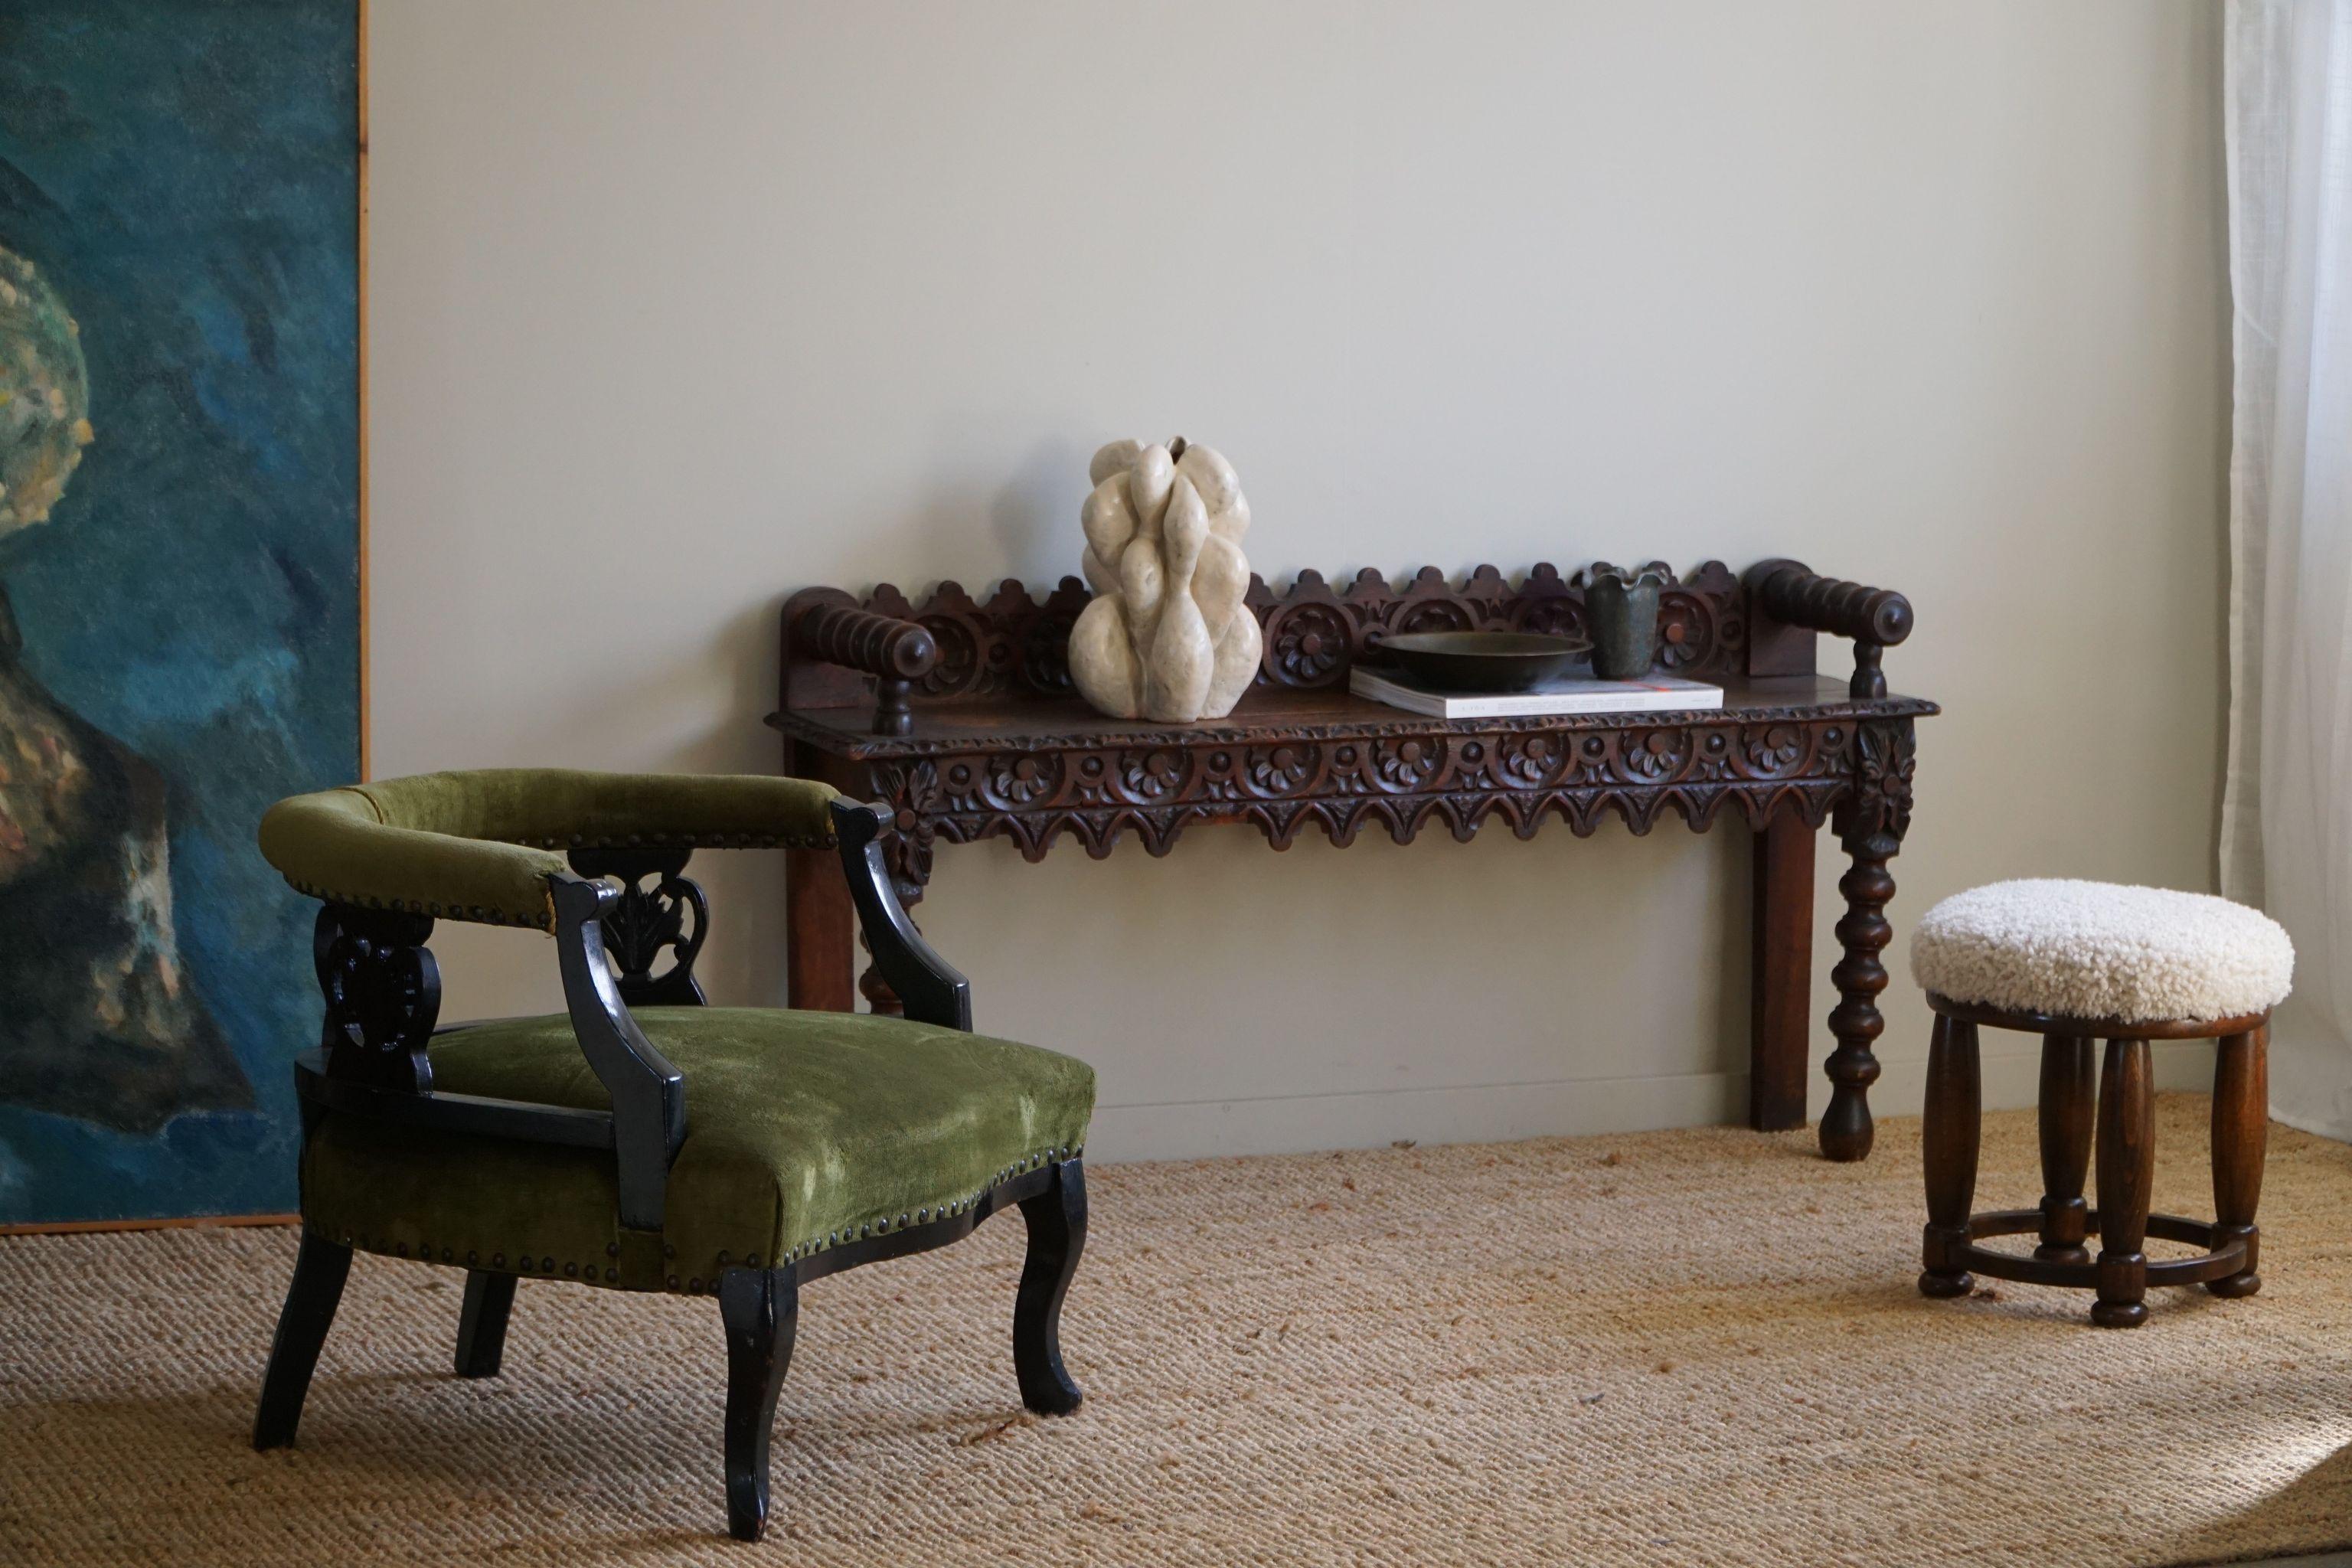 Imaginez une chaise à la fois confortable et élégante de la fin des années 1800, rappelant l'ère victorienne. Cette chaise présente un gracieux cadre en bois, sculpté de façon complexe avec des détails ornementaux, reflétant le savoir-faire de